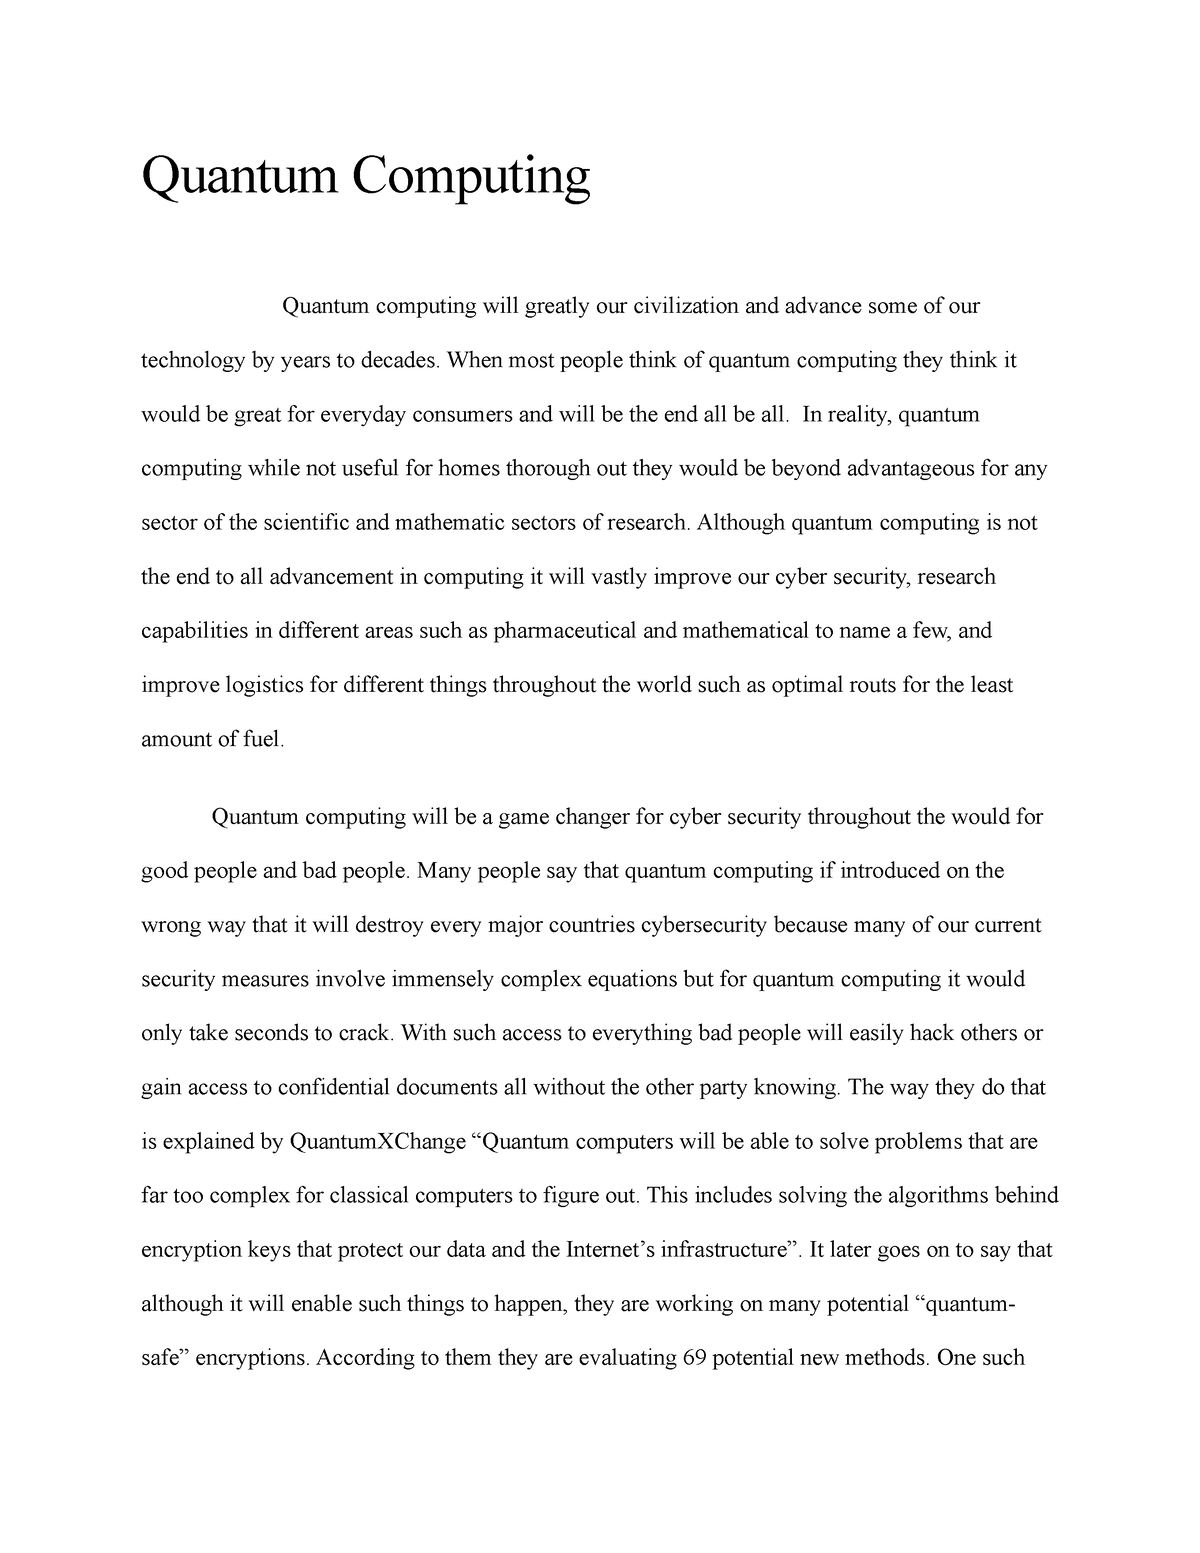 essay about quantum computing